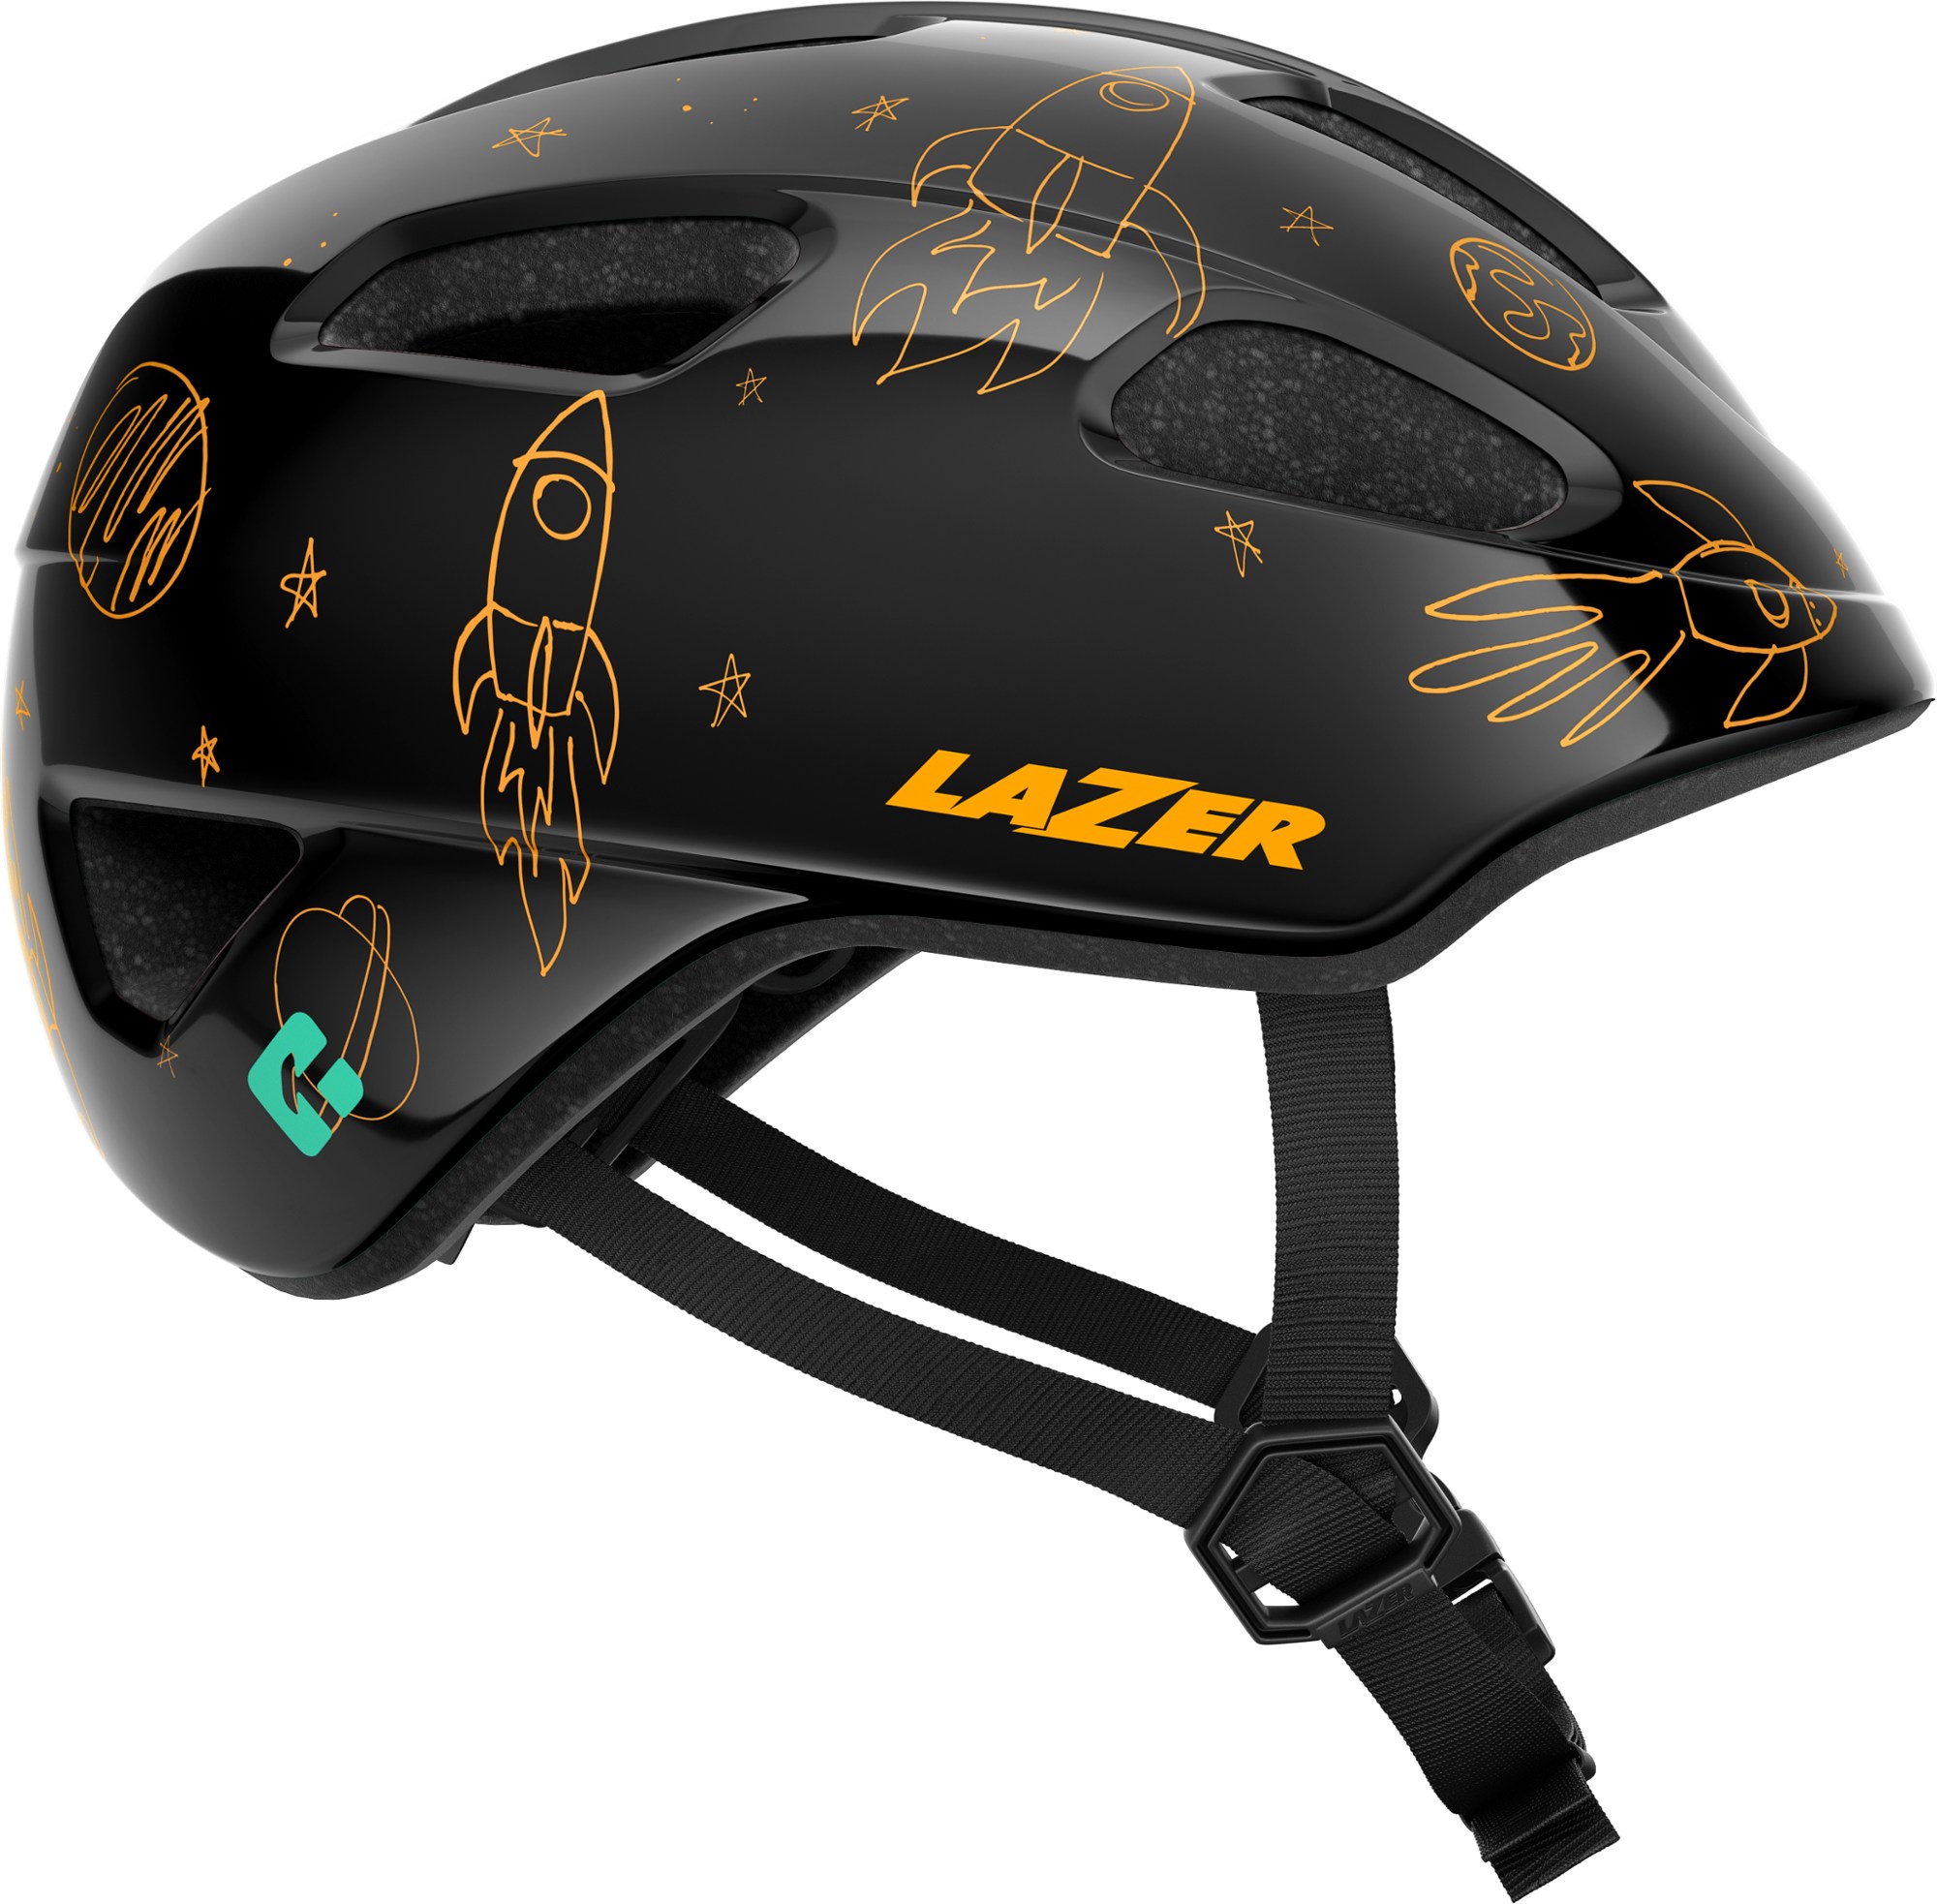 велосипедный шлем nutz kineticore детский lazer синий Велосипедный шлем Pnut KinetiCore — для малышей Lazer, черный